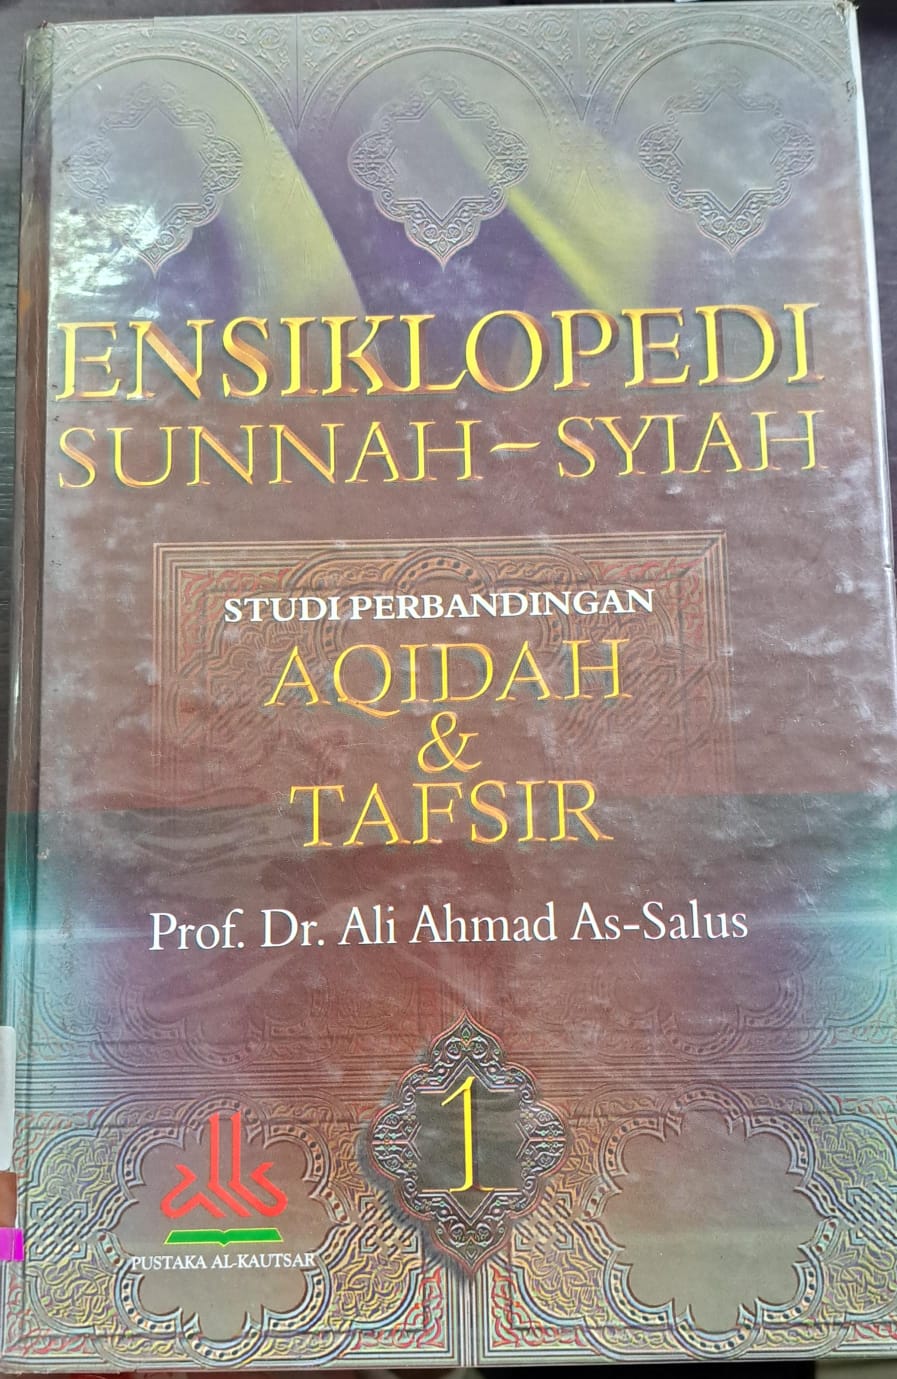 Ensiklopedi sunnah-syiah :  Studi perbandingan aqidah & tafsir, Jilid 1